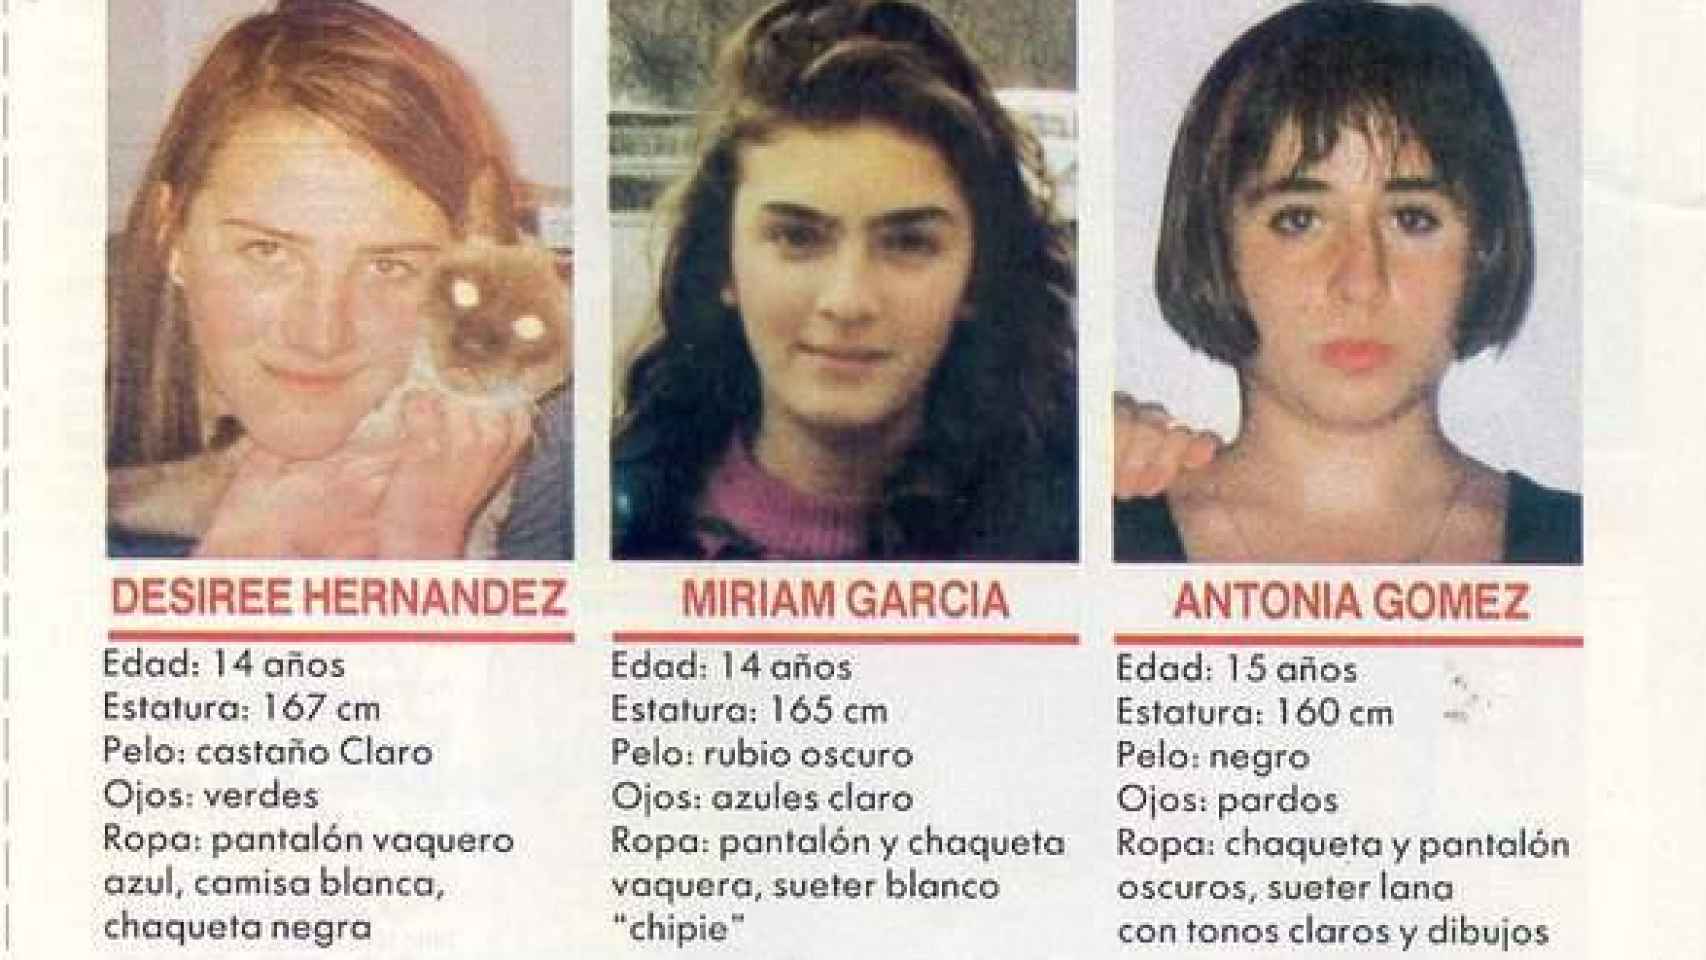 Durante 75 días, del 13 de noviembre de 1992 al 27 de enero de 1993, las tres amigas estuvieron desaparecidas. Dos apicultores hallaron sus cadáveres en una zona de sierra del entorno de Tous (Valencia)